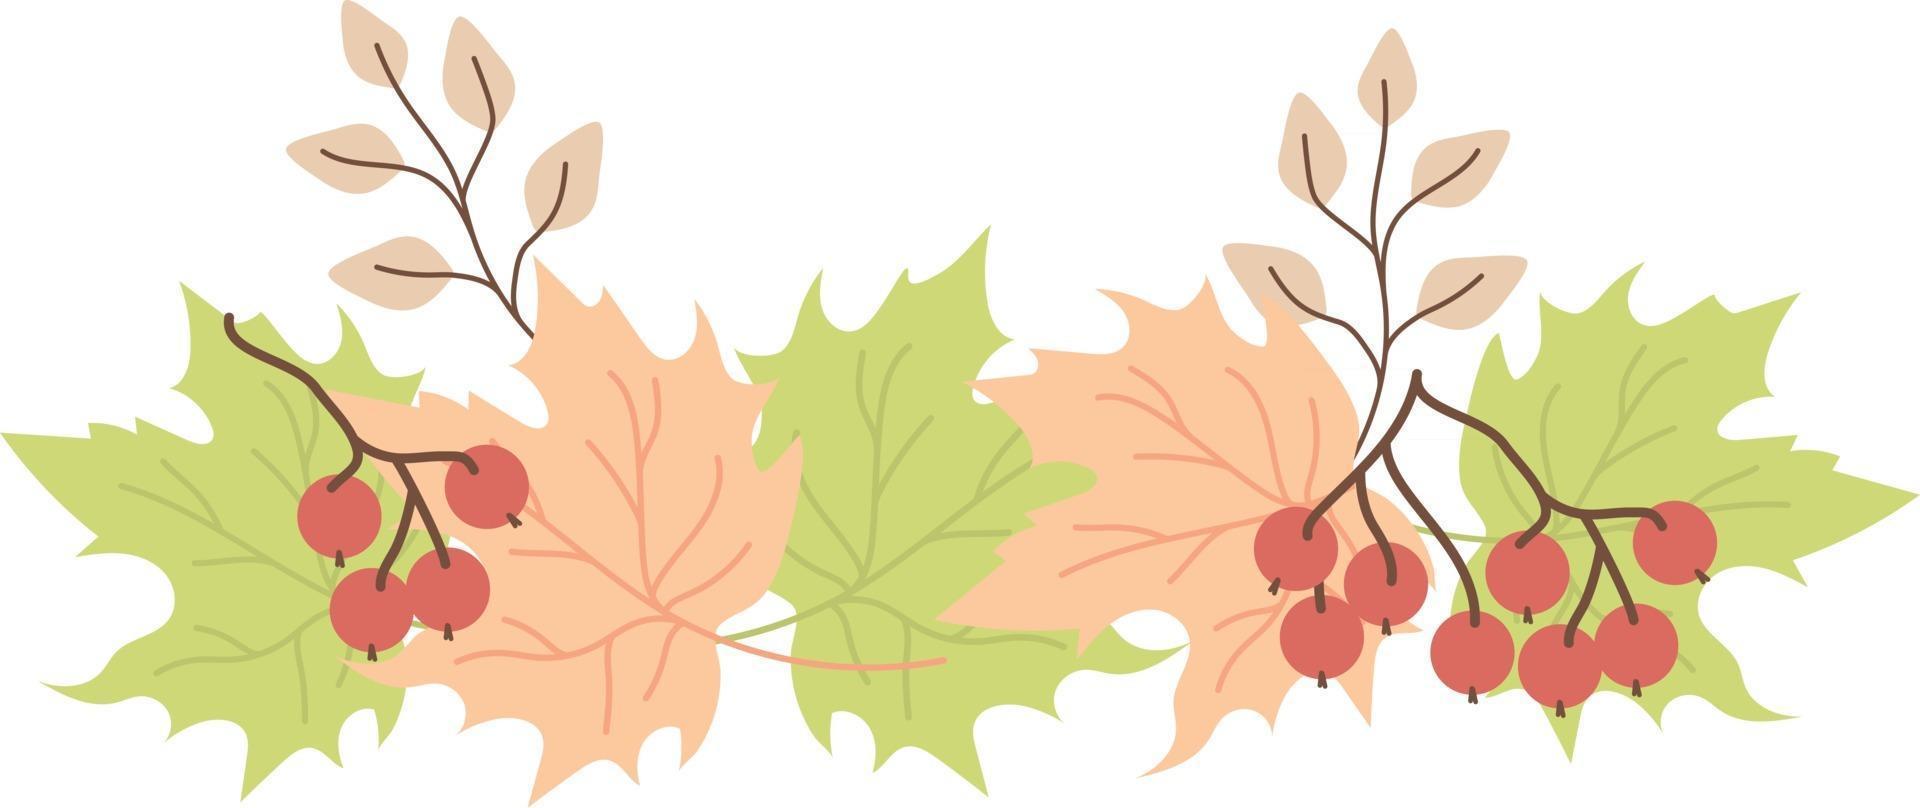 padrão horizontal de folhas de outono vetor